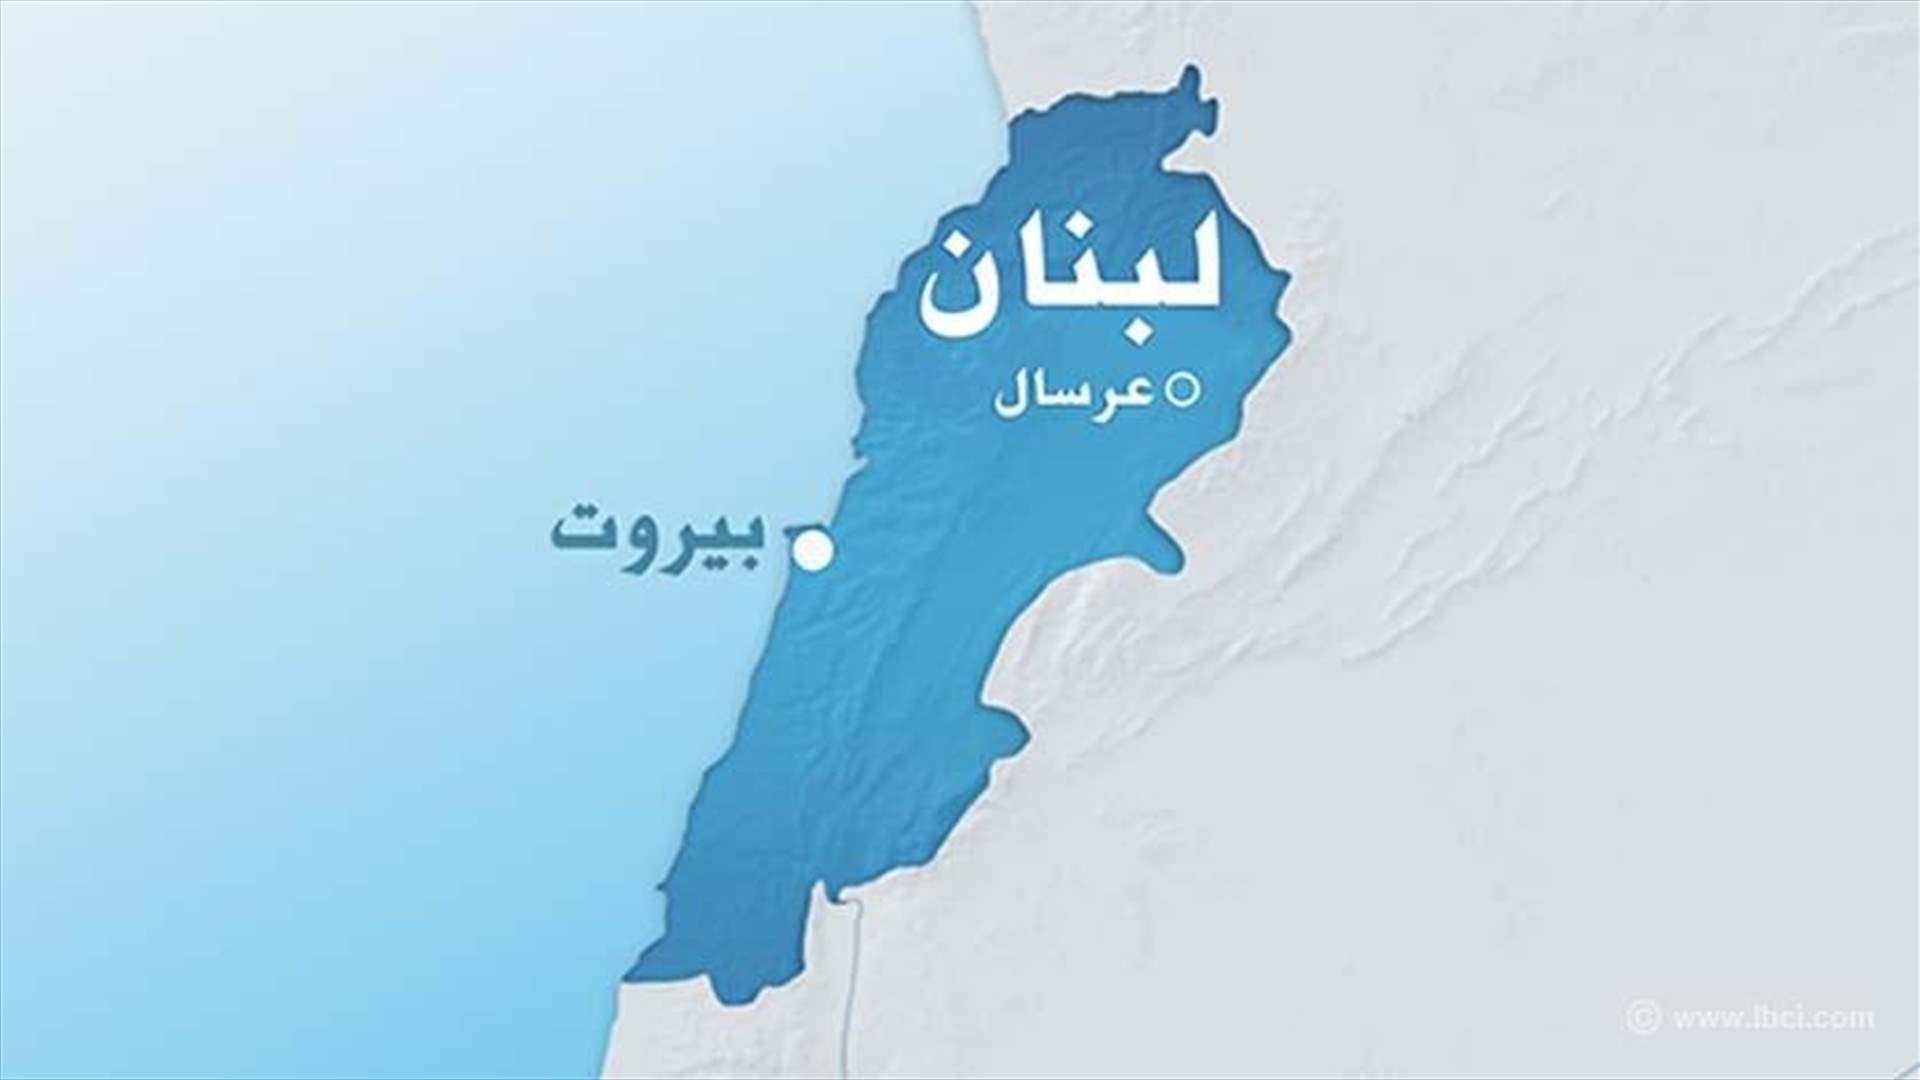 مقتل لبناني في وادي الخيل إثر اشتباكات بين المسلحين في الجرود